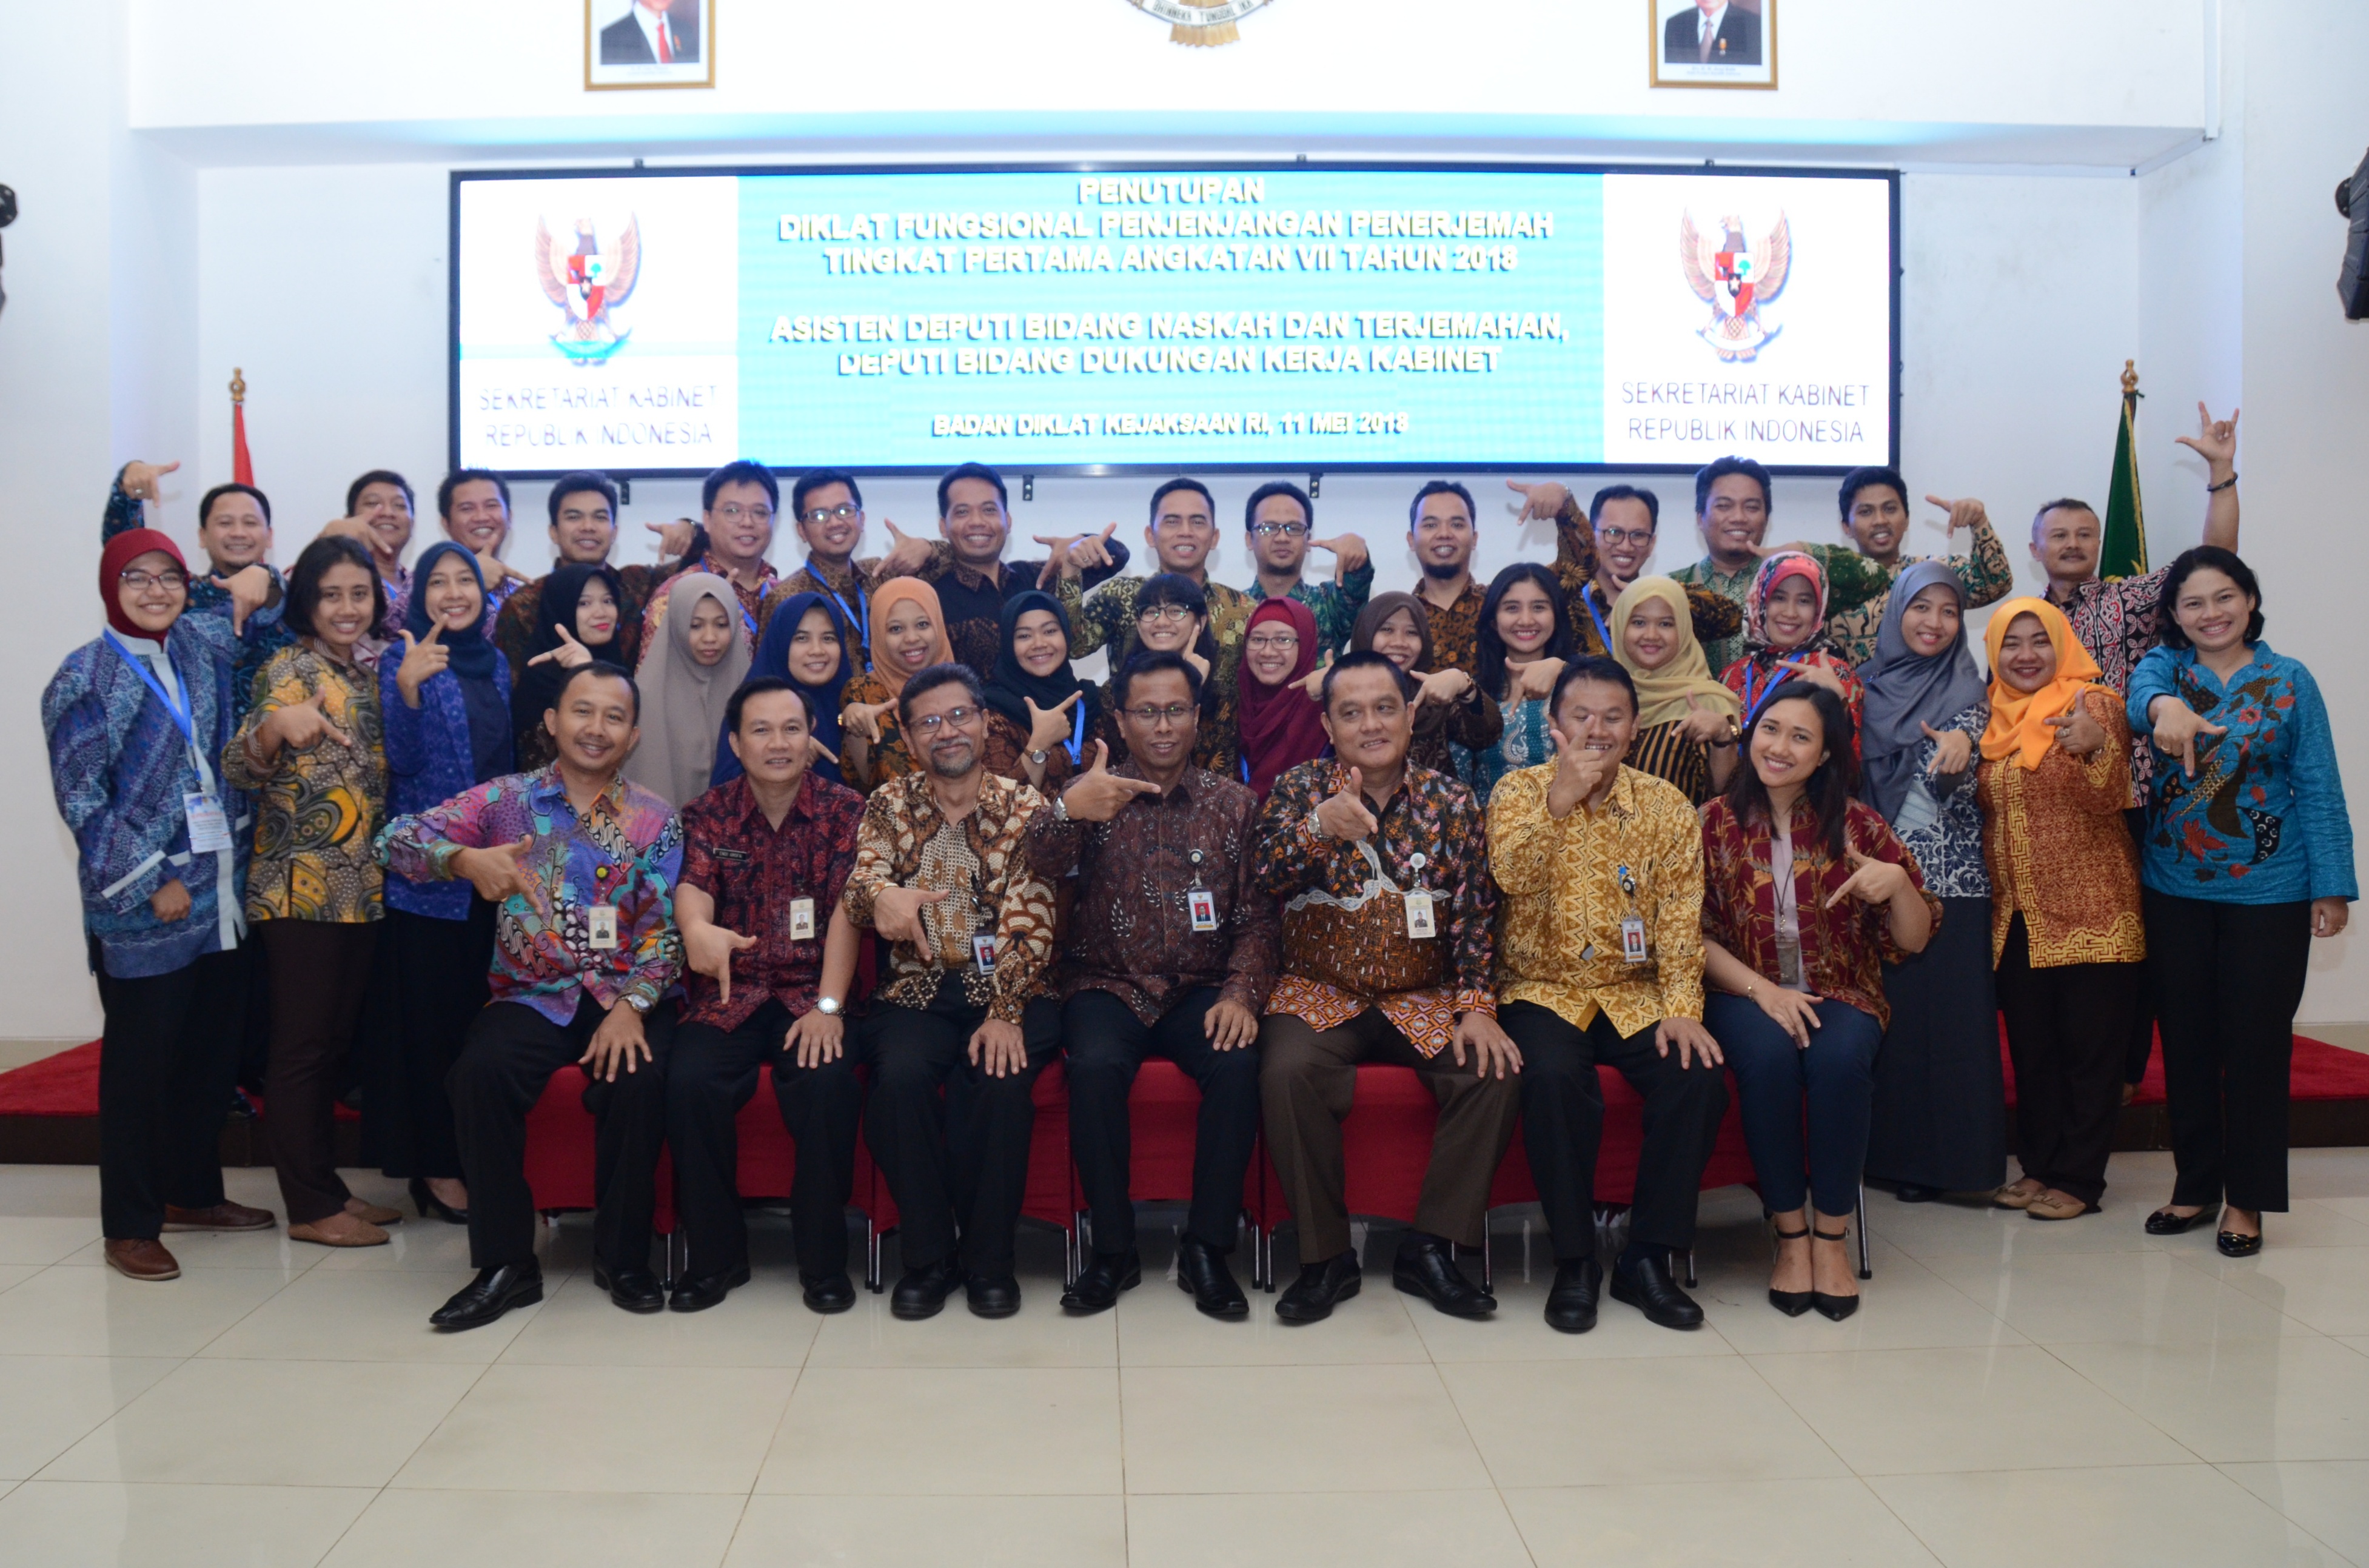 Deputi DKK Yuli Harsono berfoto bersama peserta Diklat Penjenjangan Penerjemah Tingkat Pertama Angkatan VII Tahun 2018